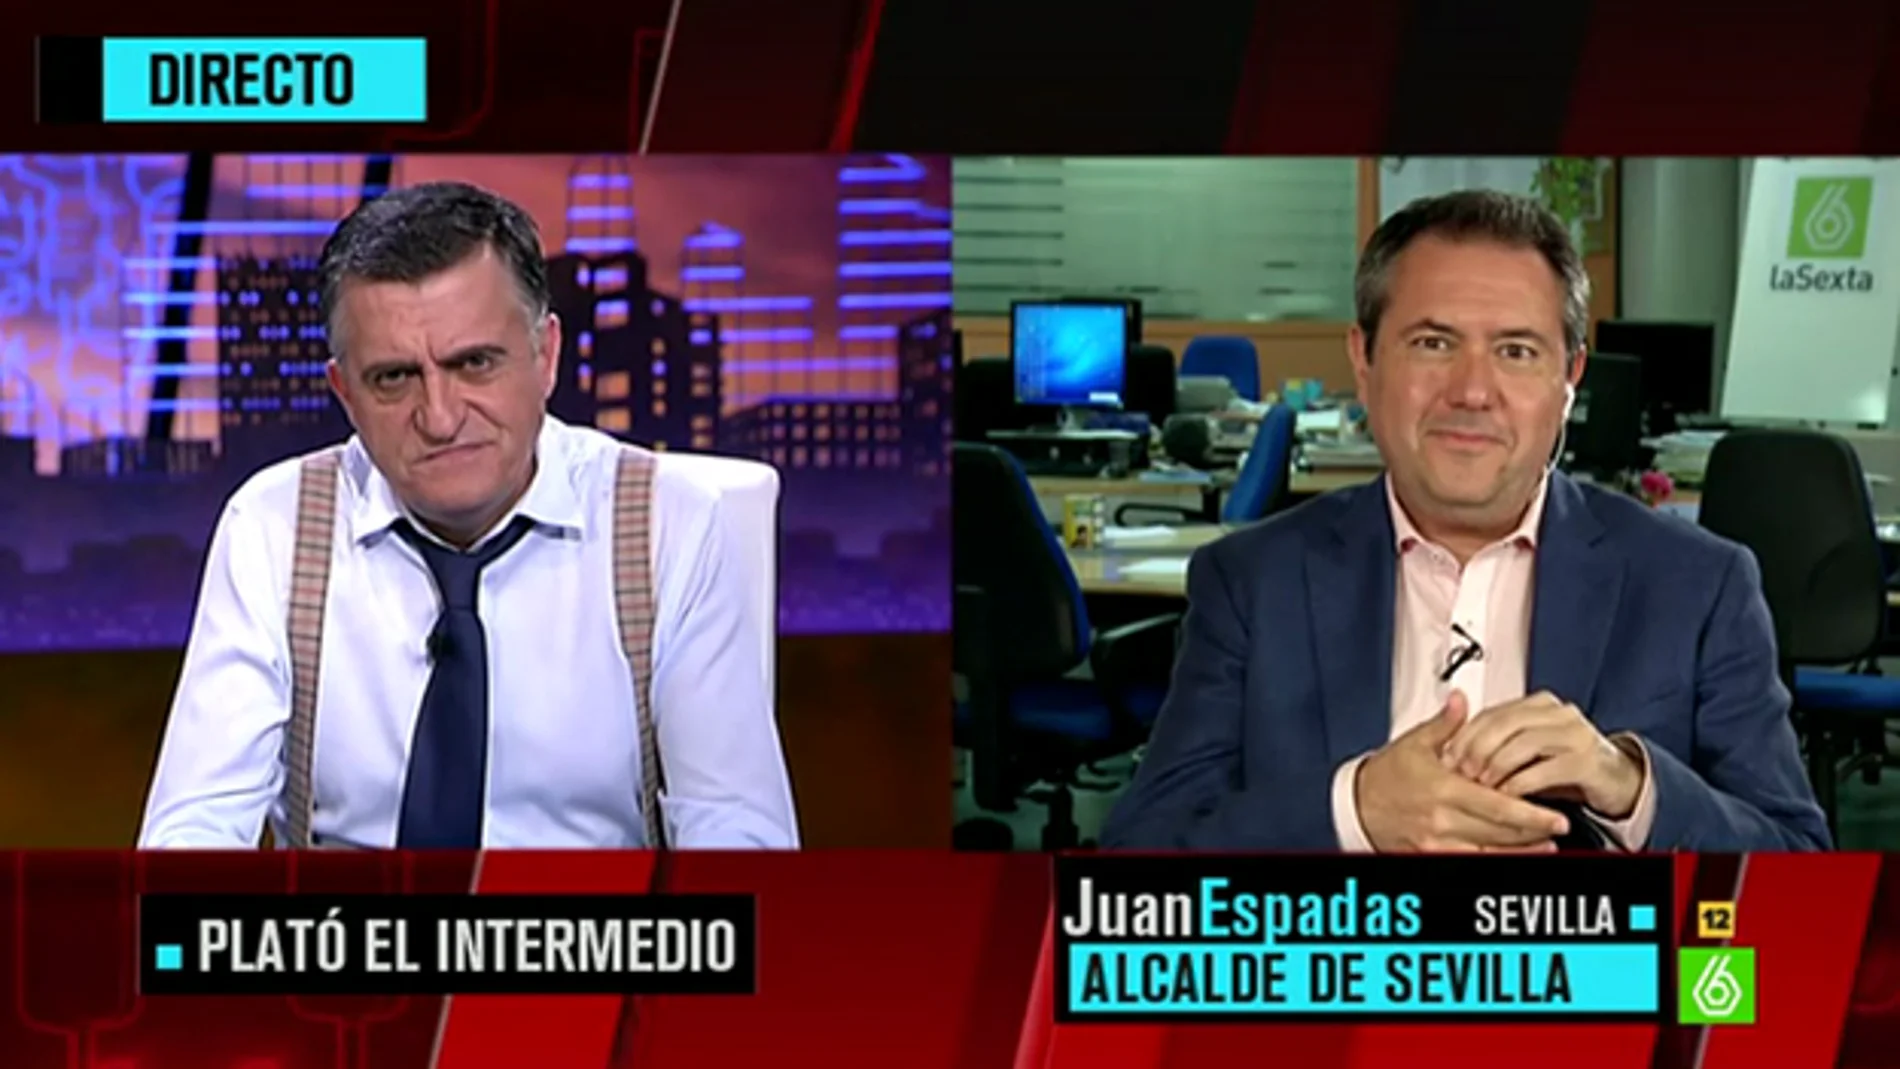 ‘El Intermedio’ conecta en directo con el alcalde de Sevilla Juan Espadas